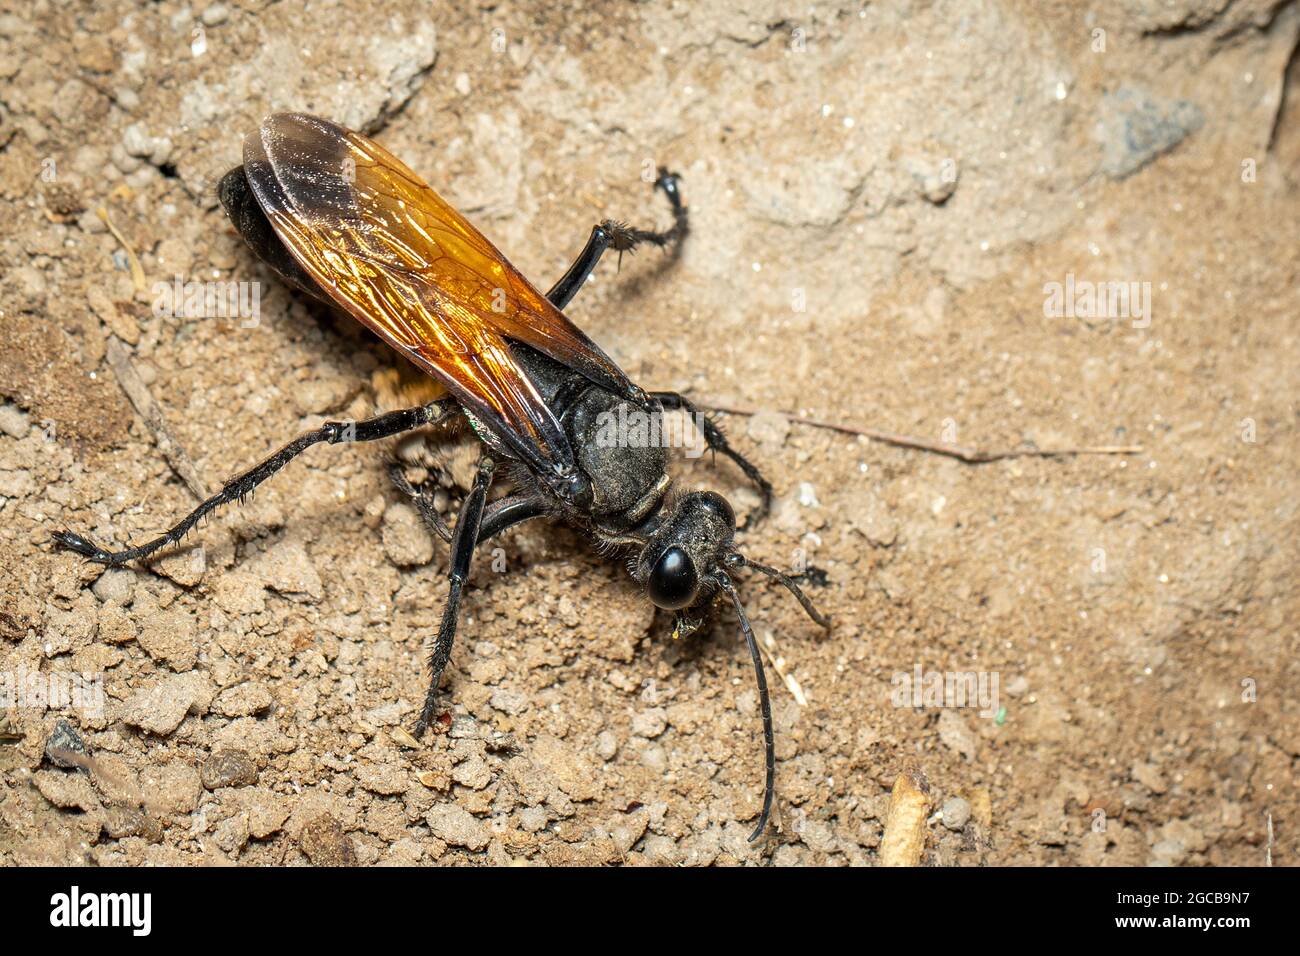 Image de l'ensacheur de sable sur le fond du sol., insecte. Animal. Banque D'Images